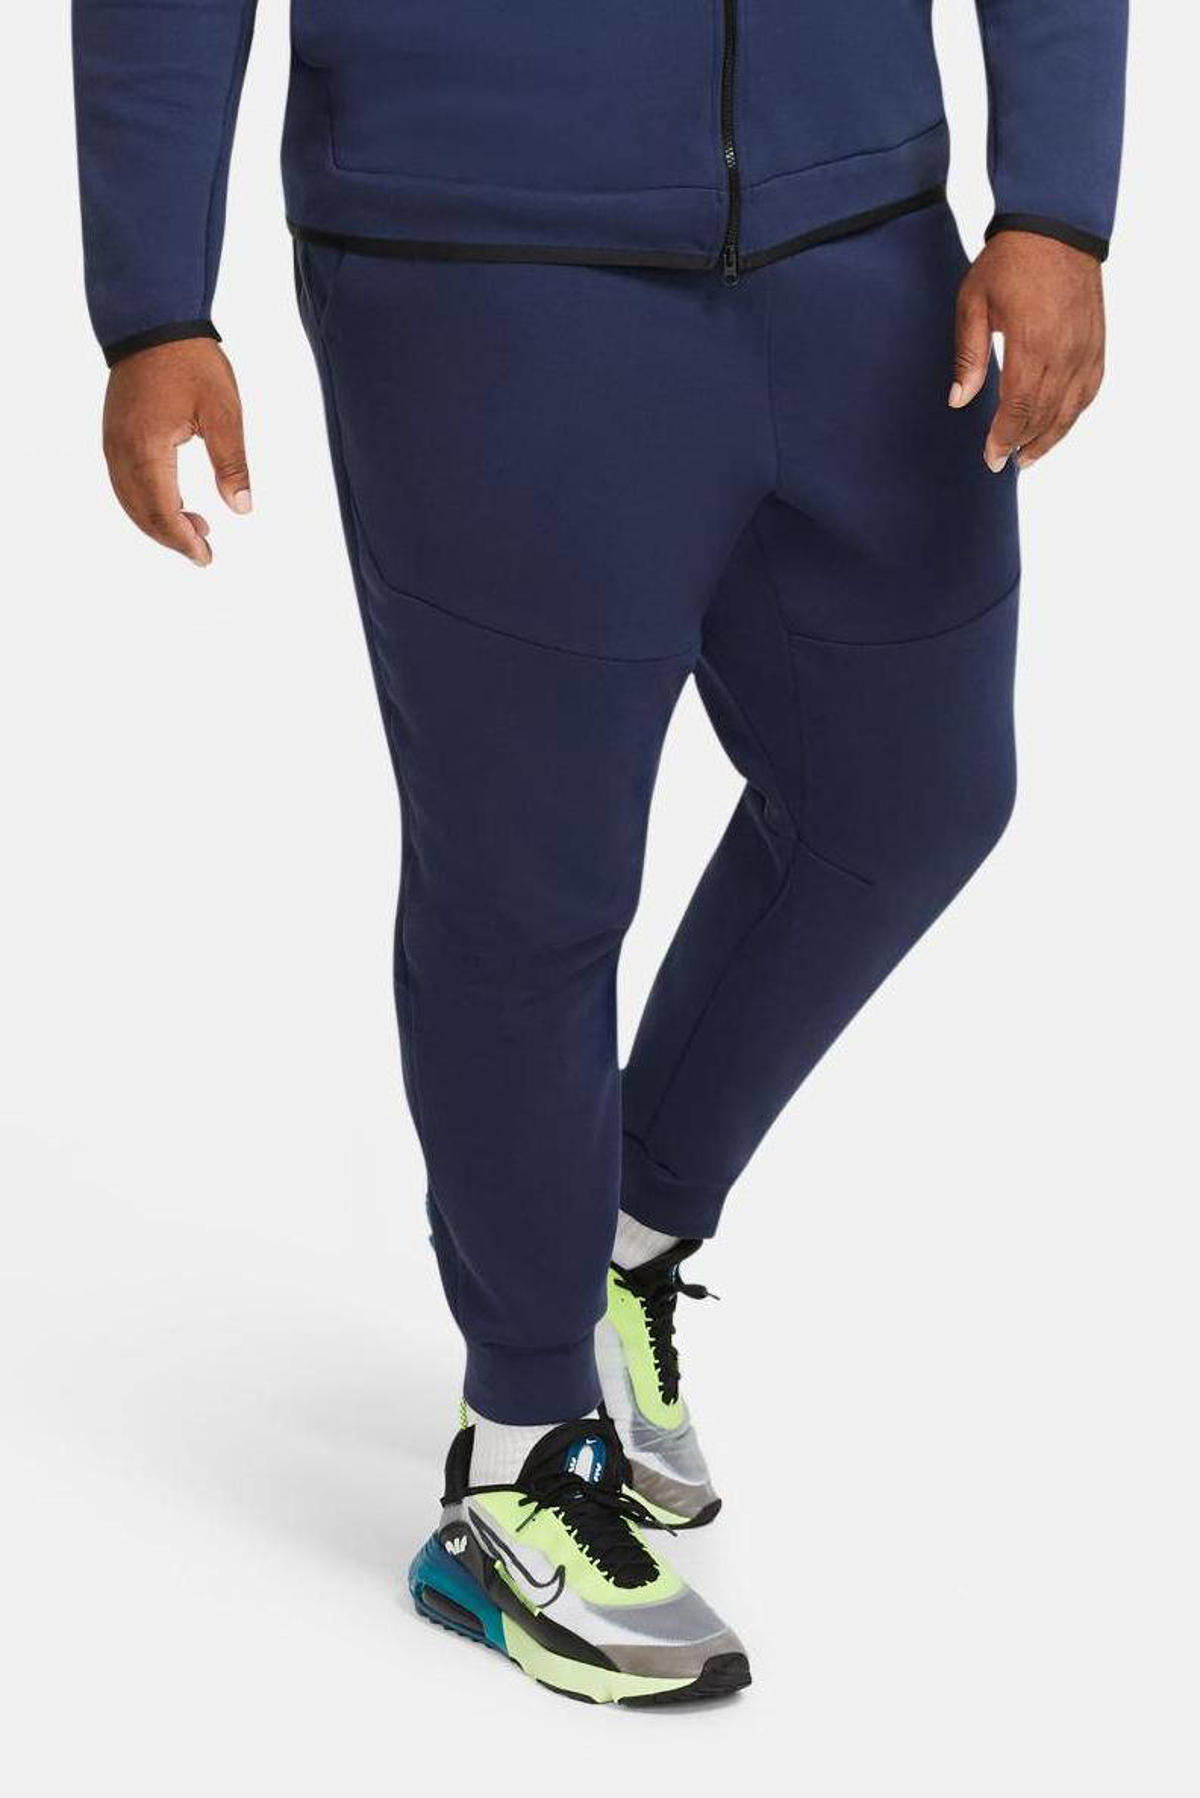 Rusteloosheid Verenigde Staten van Amerika Stevig Nike Tech Fleece joggingbroek donkerblauw/zwart | wehkamp